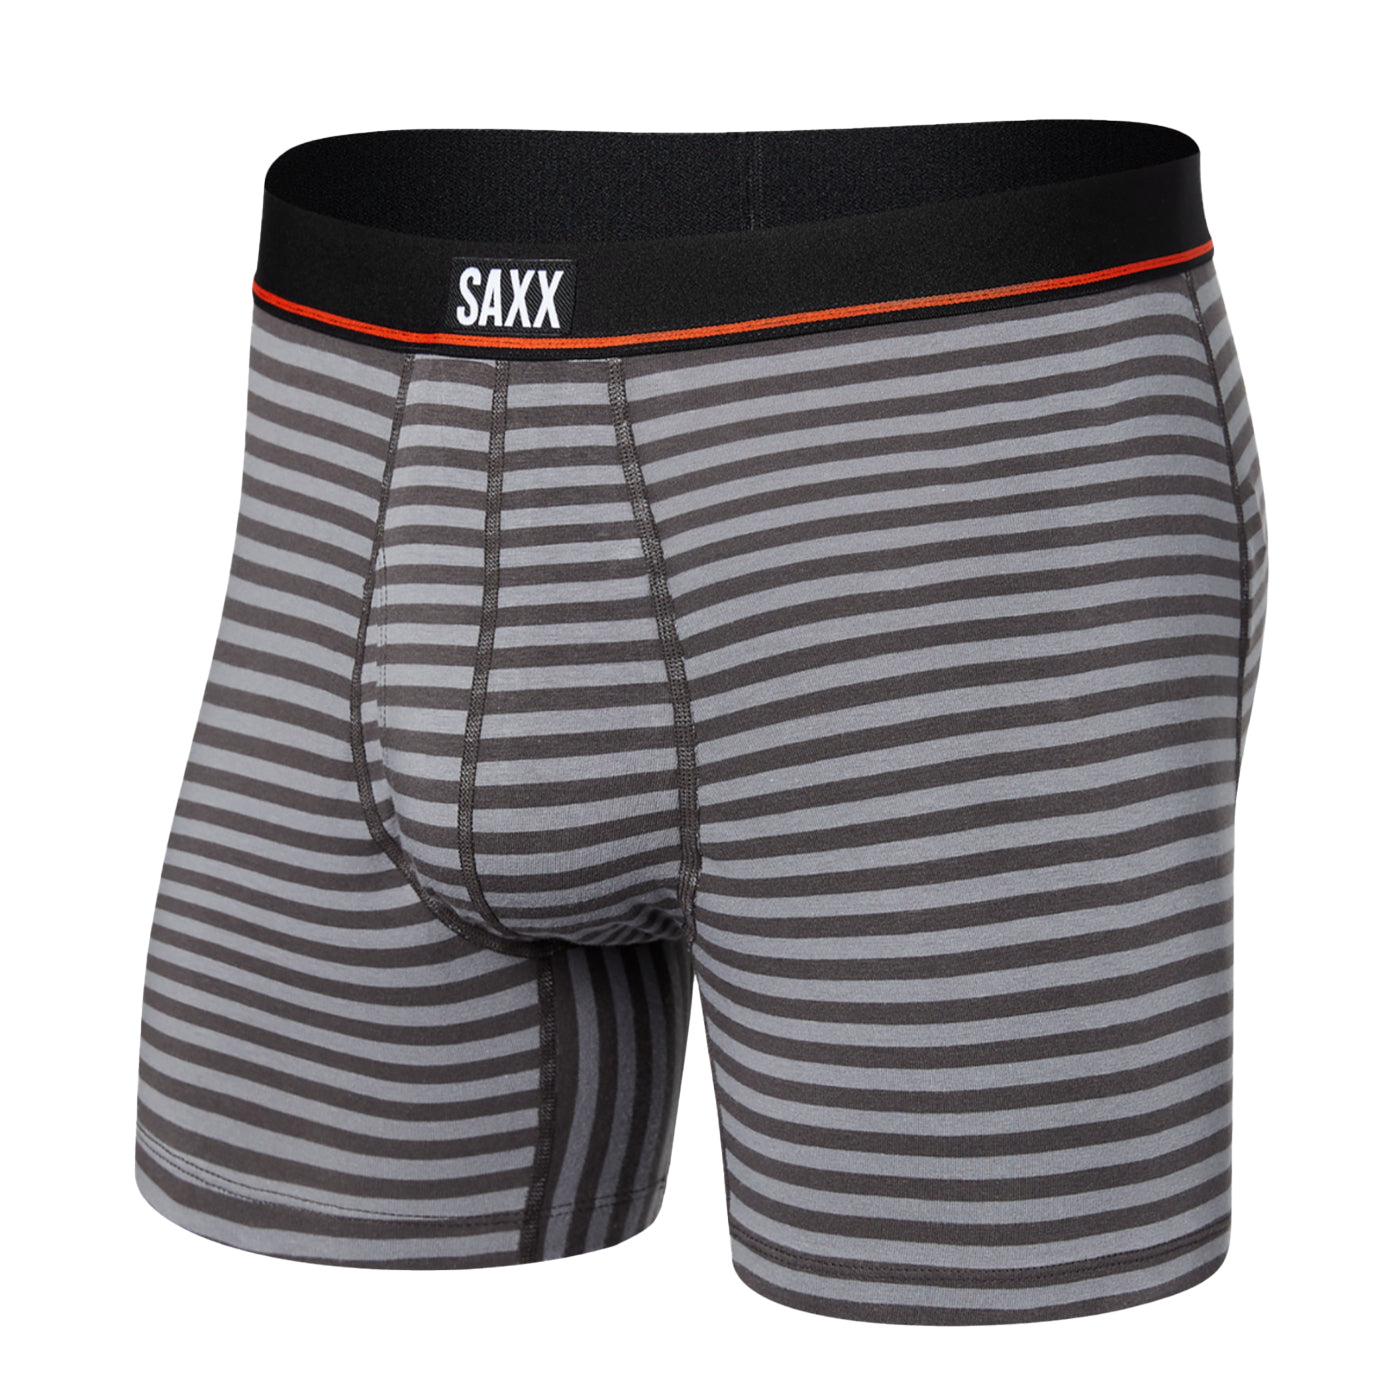 SAXX UNDERWEAR – Finnieston Clothing Ltd.